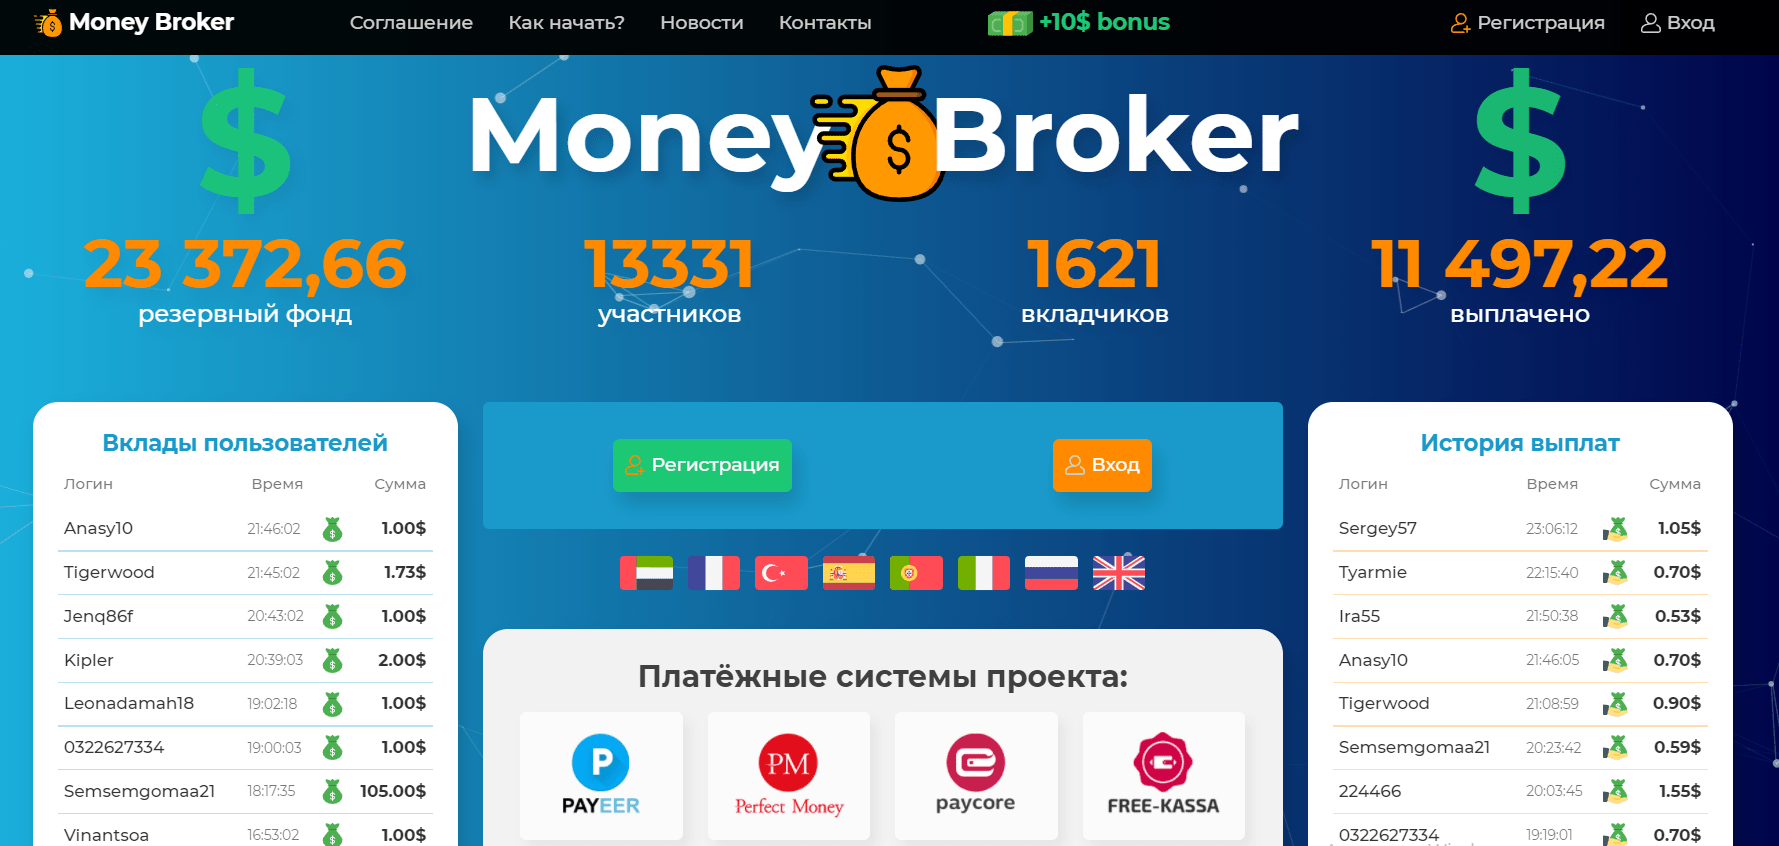 Money Broker - низкопробная афера, Фото № 1 - 1-consult.net